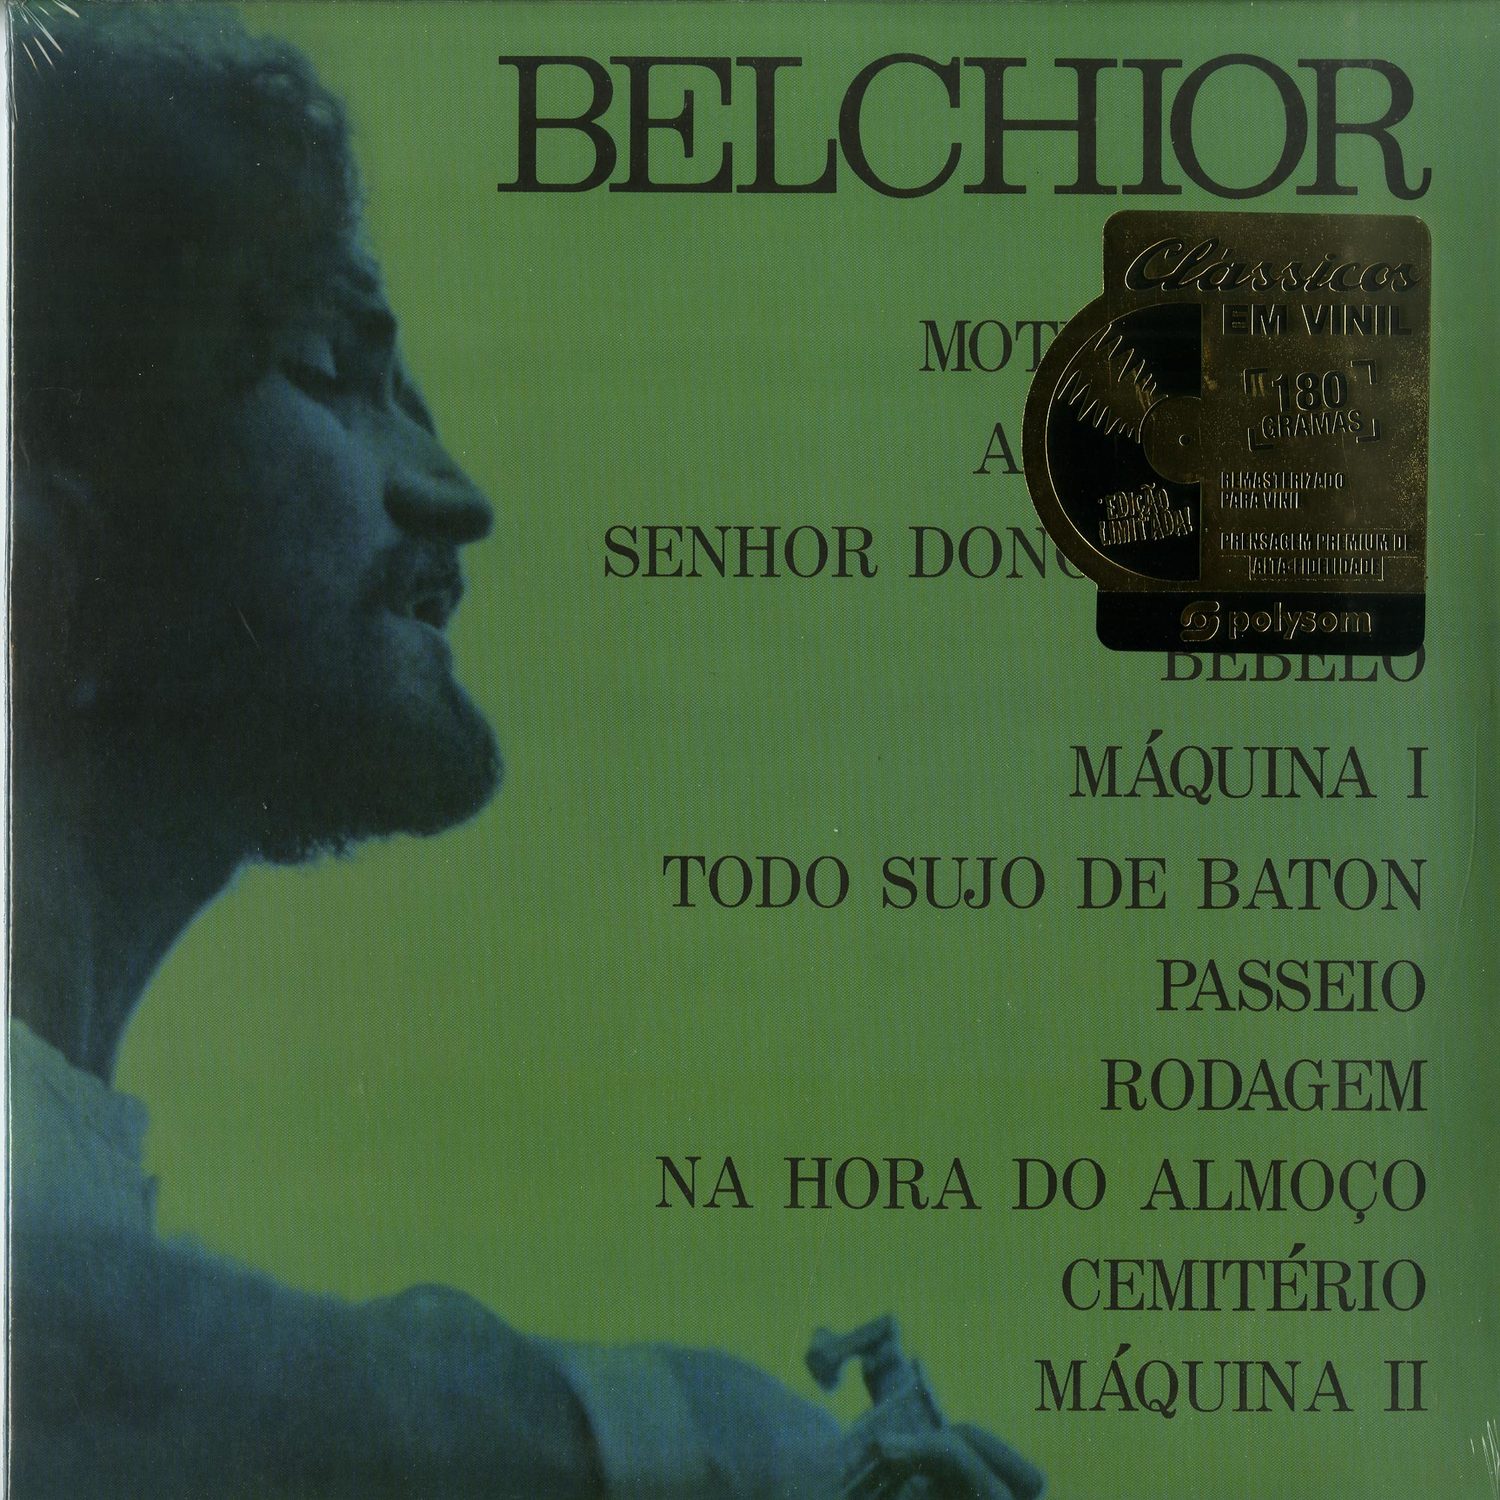 Belchior - BELCHIOR 